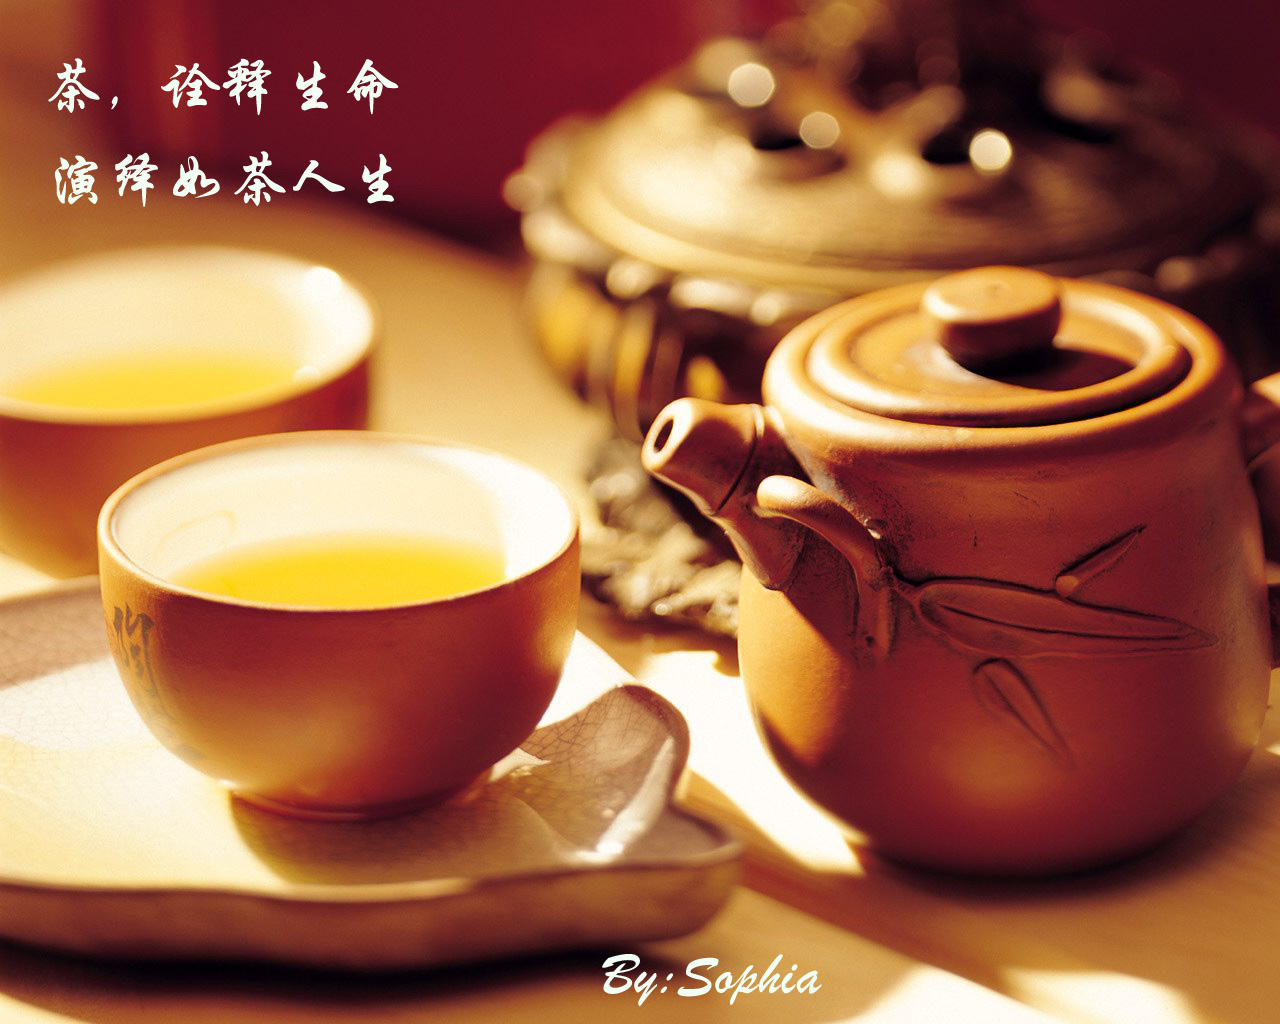 不同时间喝不同茶:早上适宜喝红茶